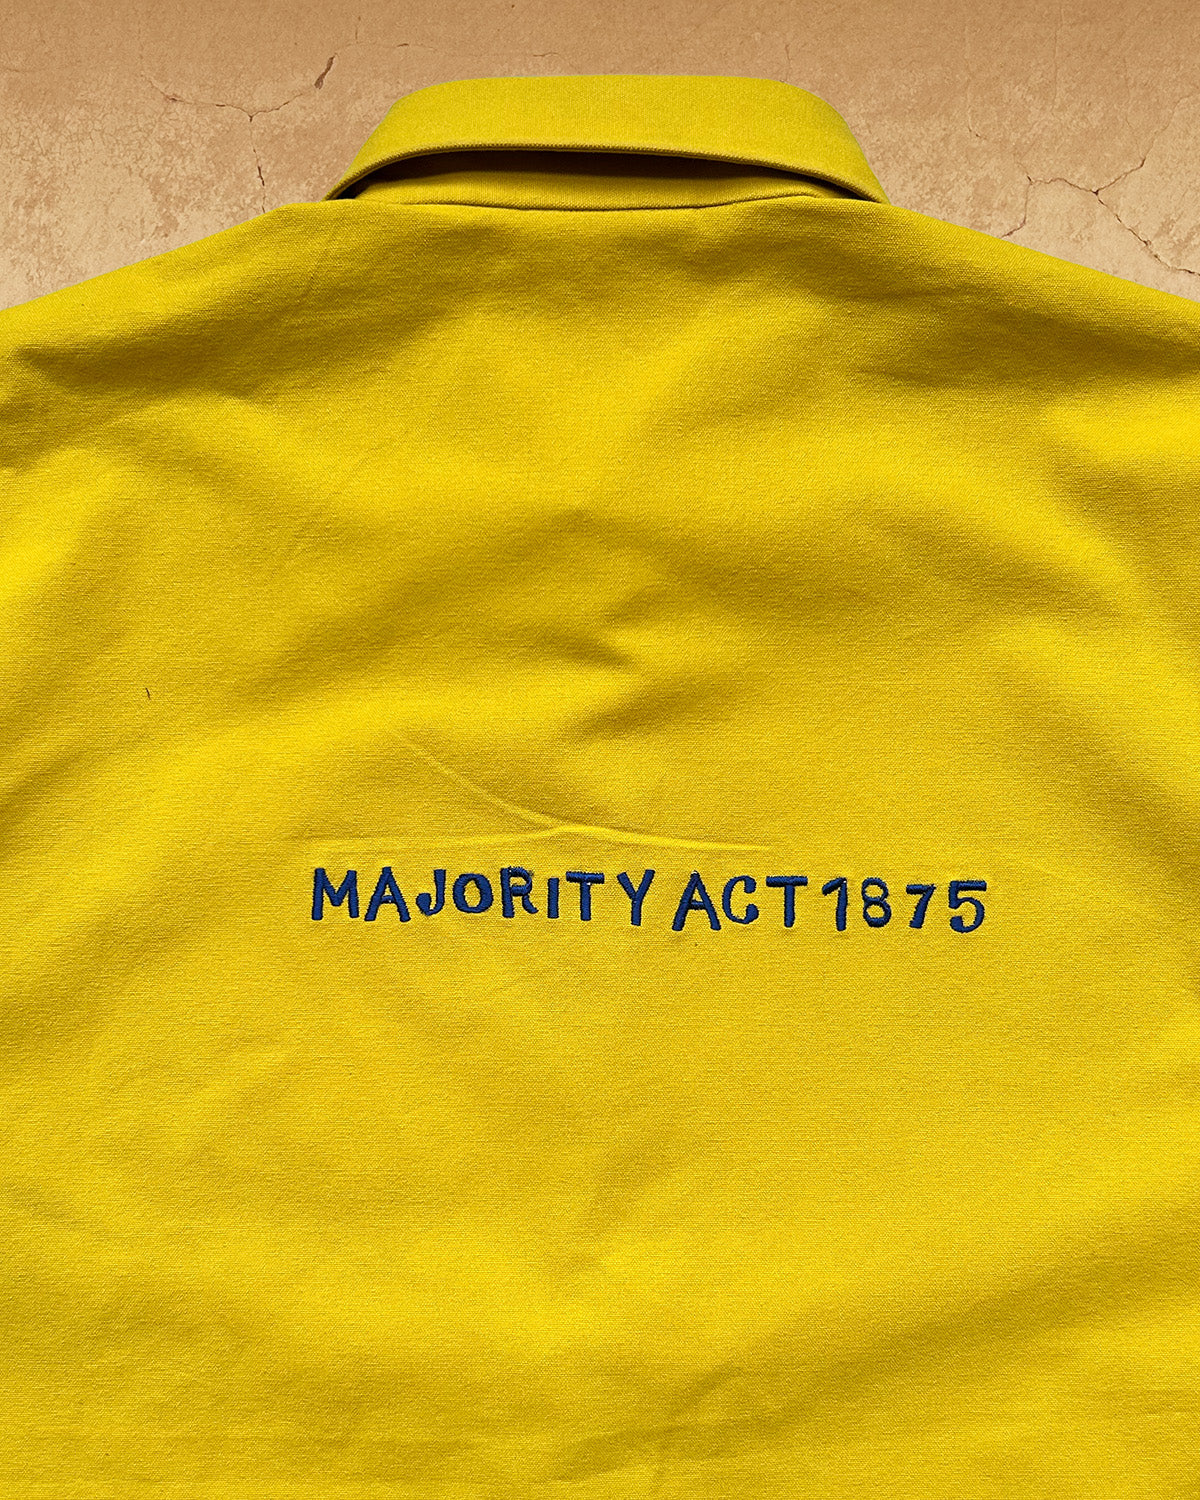 Majority Act III